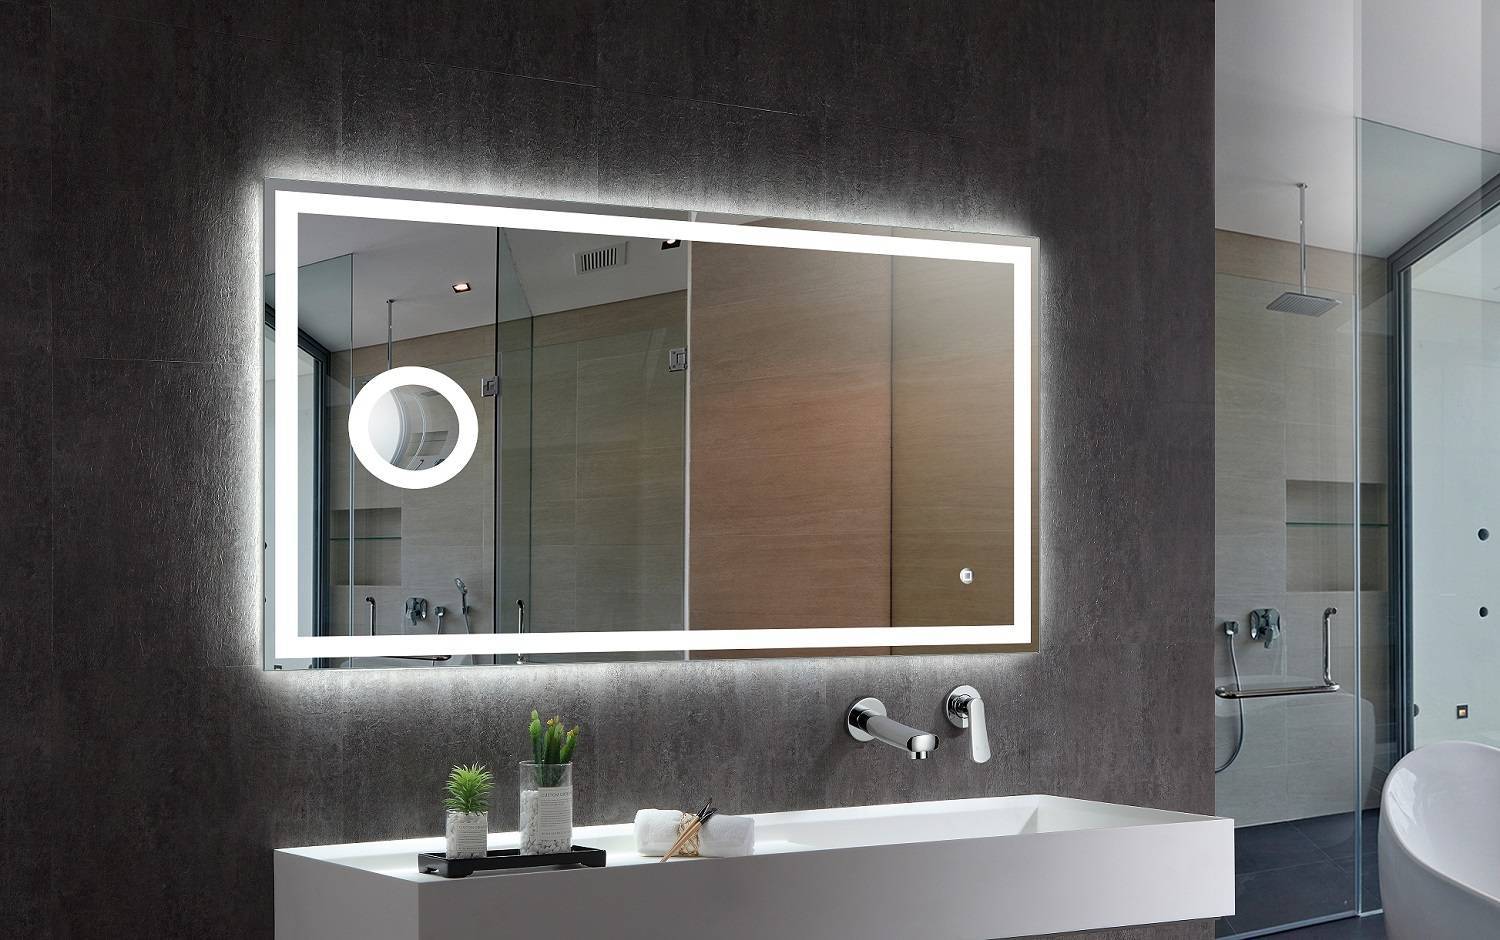 Подсветка для зеркала в ванной, какой бывает, советы по расположению